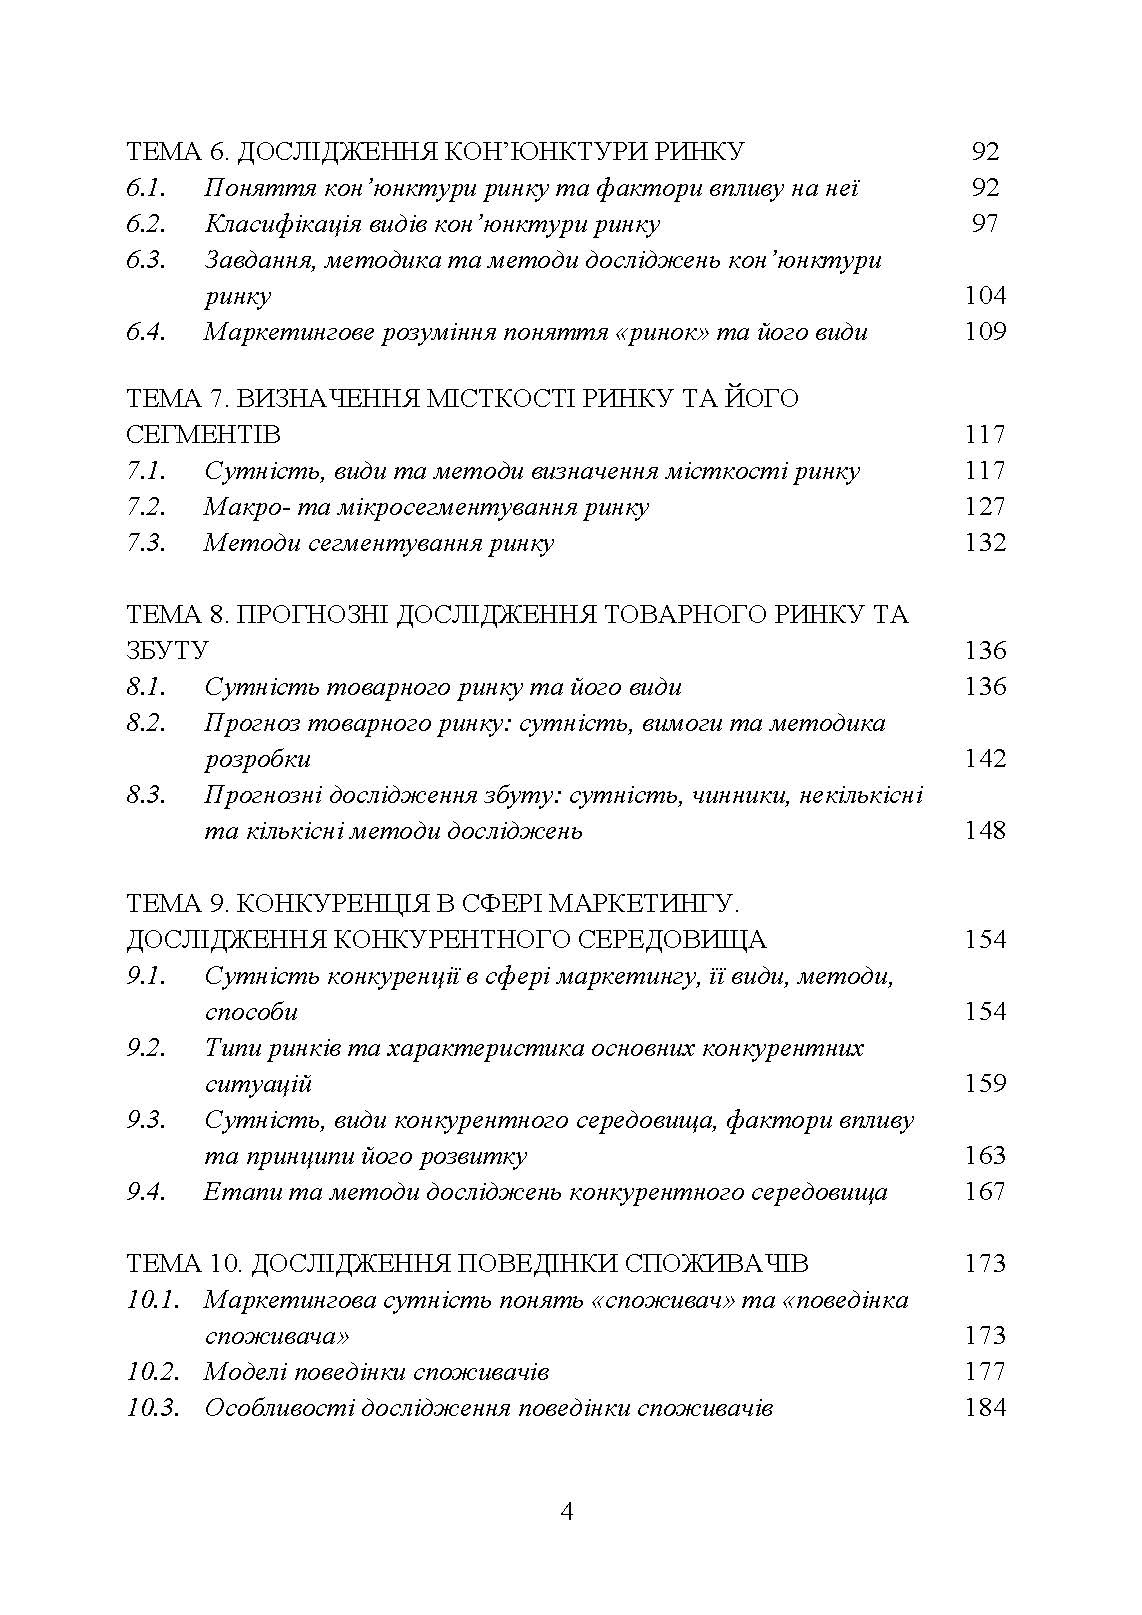 Маркетингові дослідження. Автор — П. В.Захарченко,<br>А. А. Самойленко, А. В. Кулік, І. Ю. Кутліна. 